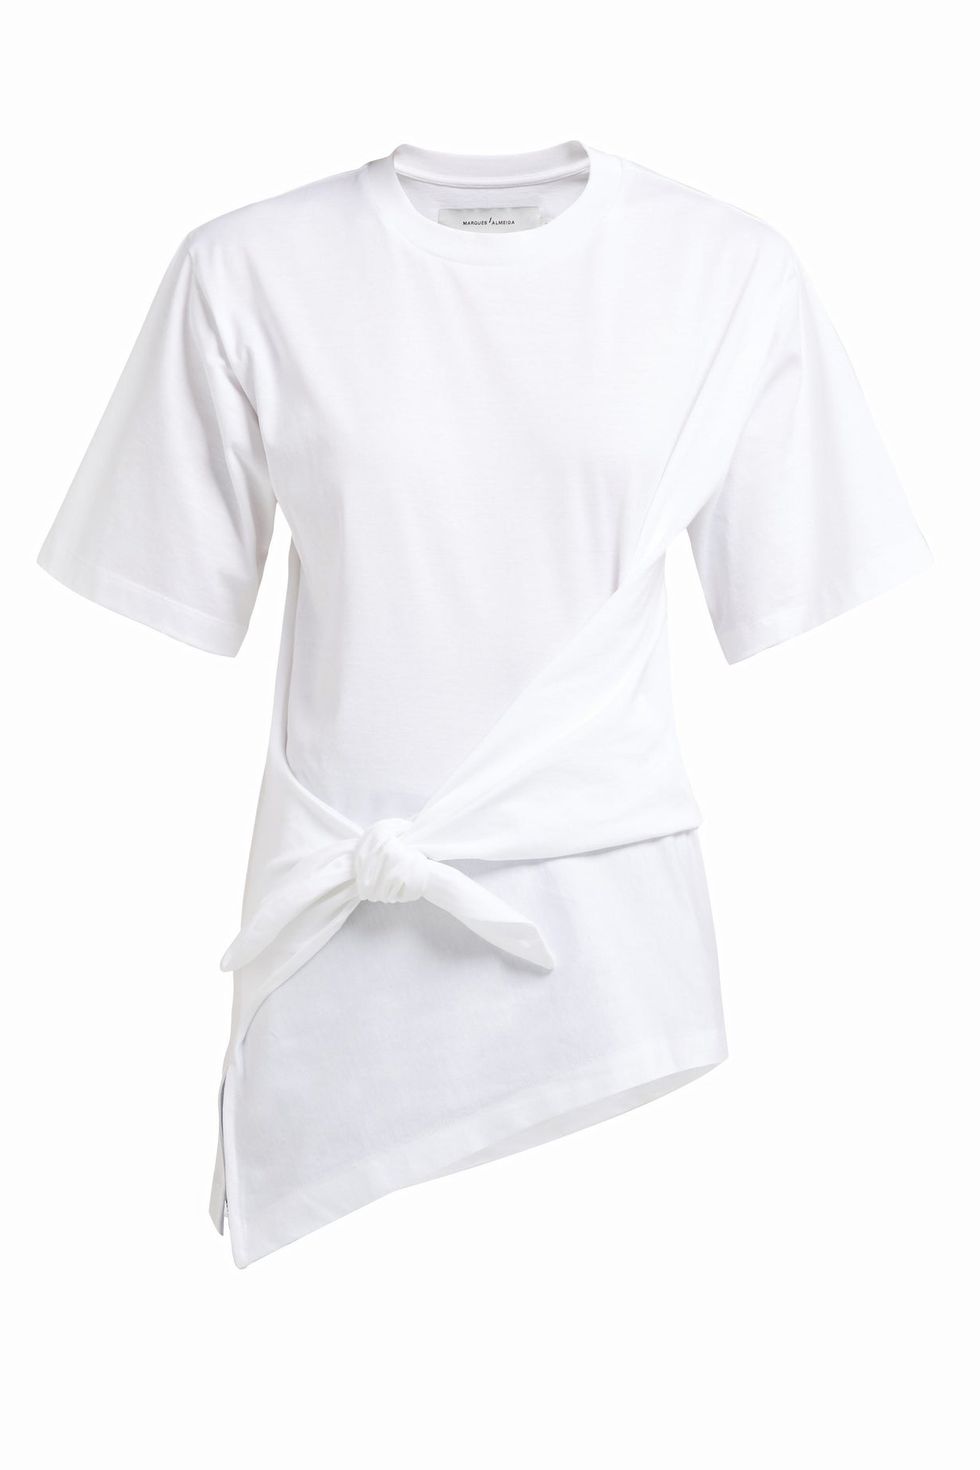 Best white t-shirt Marques' Almeida